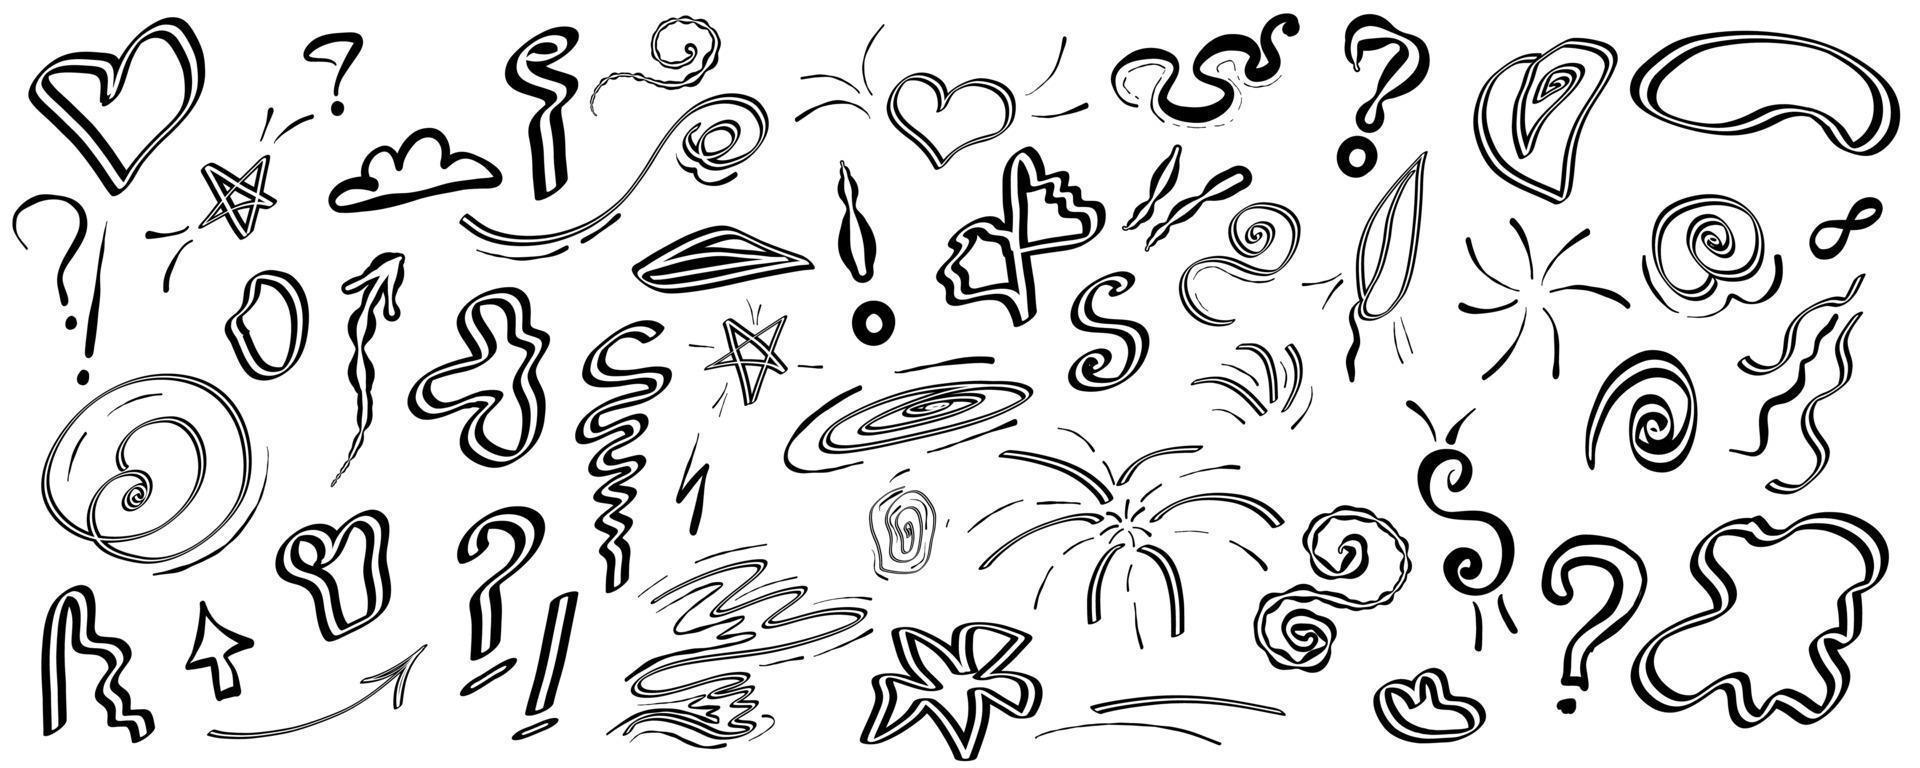 doodle Swish im Sketch-Stil. einfache Strichzeichnung. handgezeichnetes kritzelset. handgezeichnetes graffiti-doodle mit questoins, pfeil, herz und liniengekritzel vektor